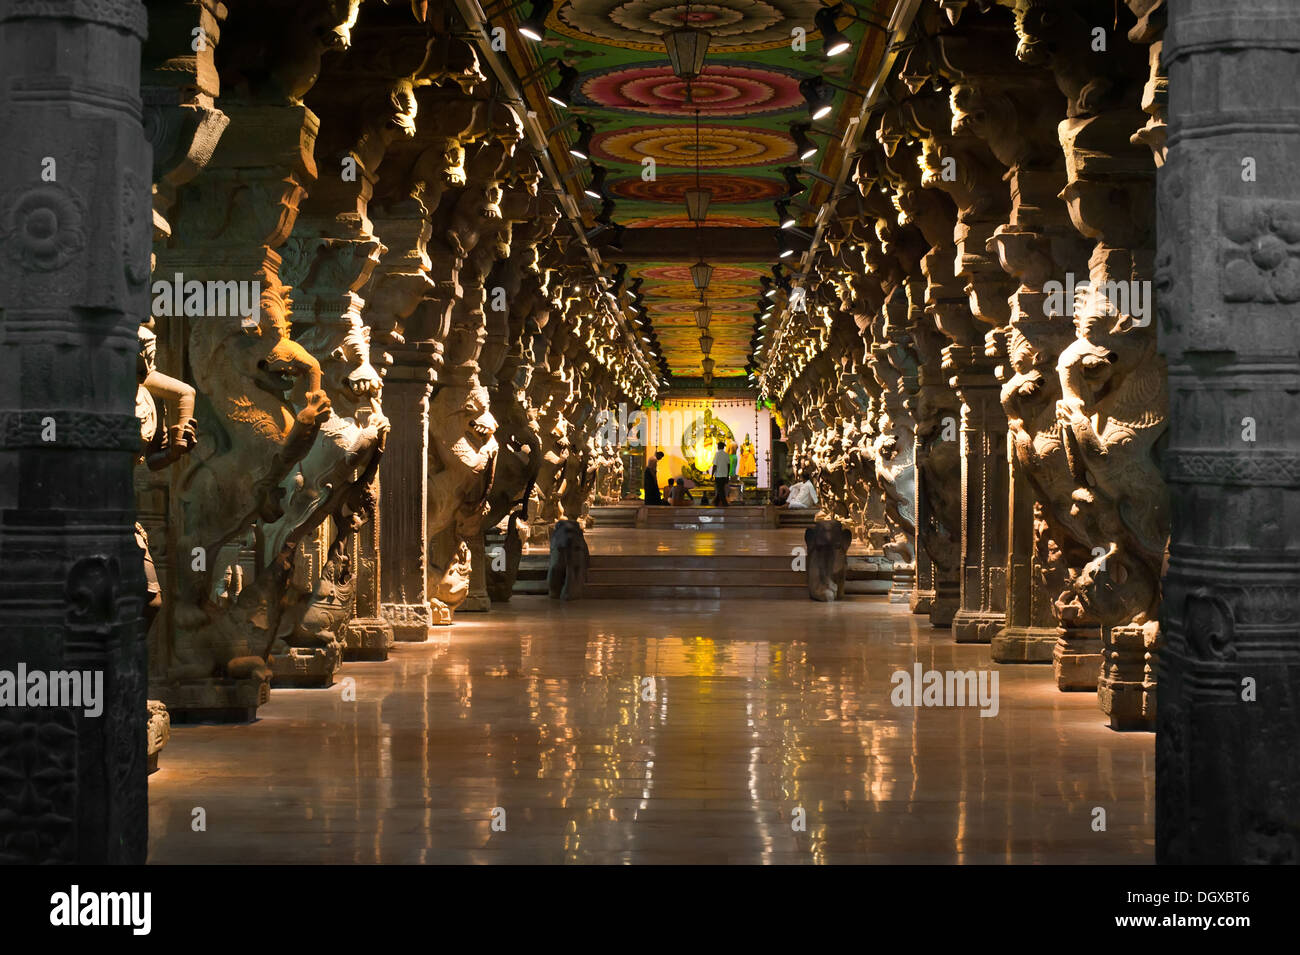 Großer Süden indische Architektur, Meenakshi Sundareswarar Tempel in Madurai. Süd-Indien, Tamil Nadu, Madurai Stockfoto